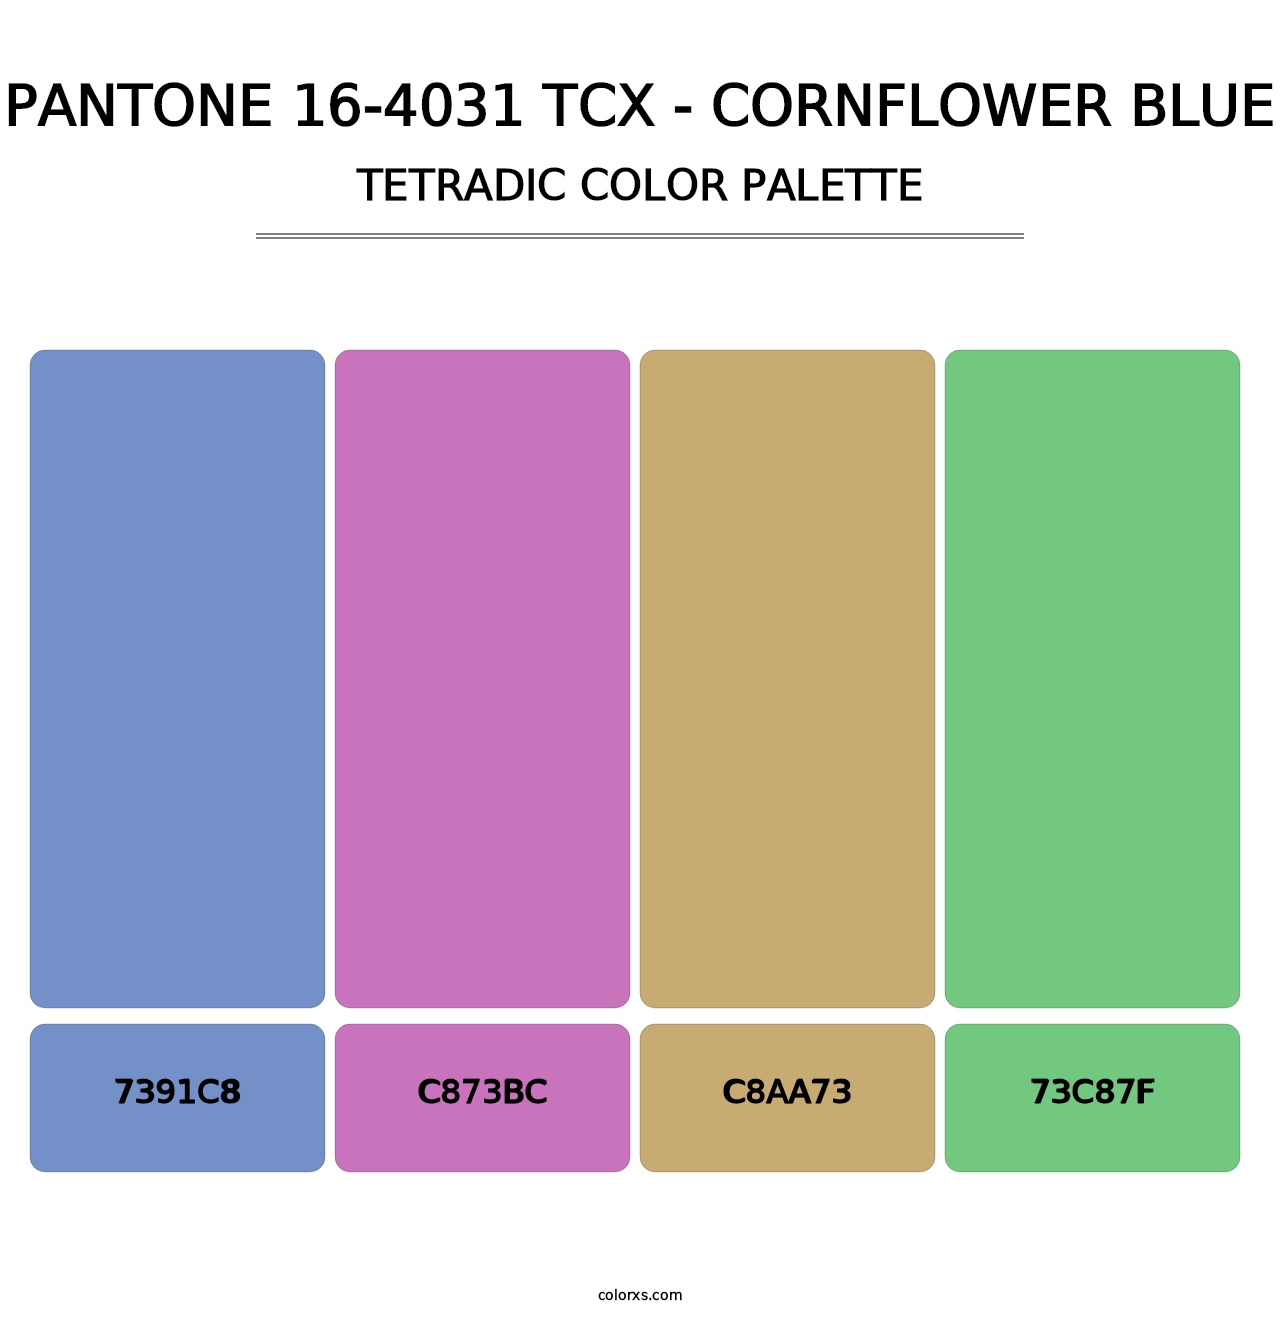 PANTONE 16-4031 TCX - Cornflower Blue - Tetradic Color Palette